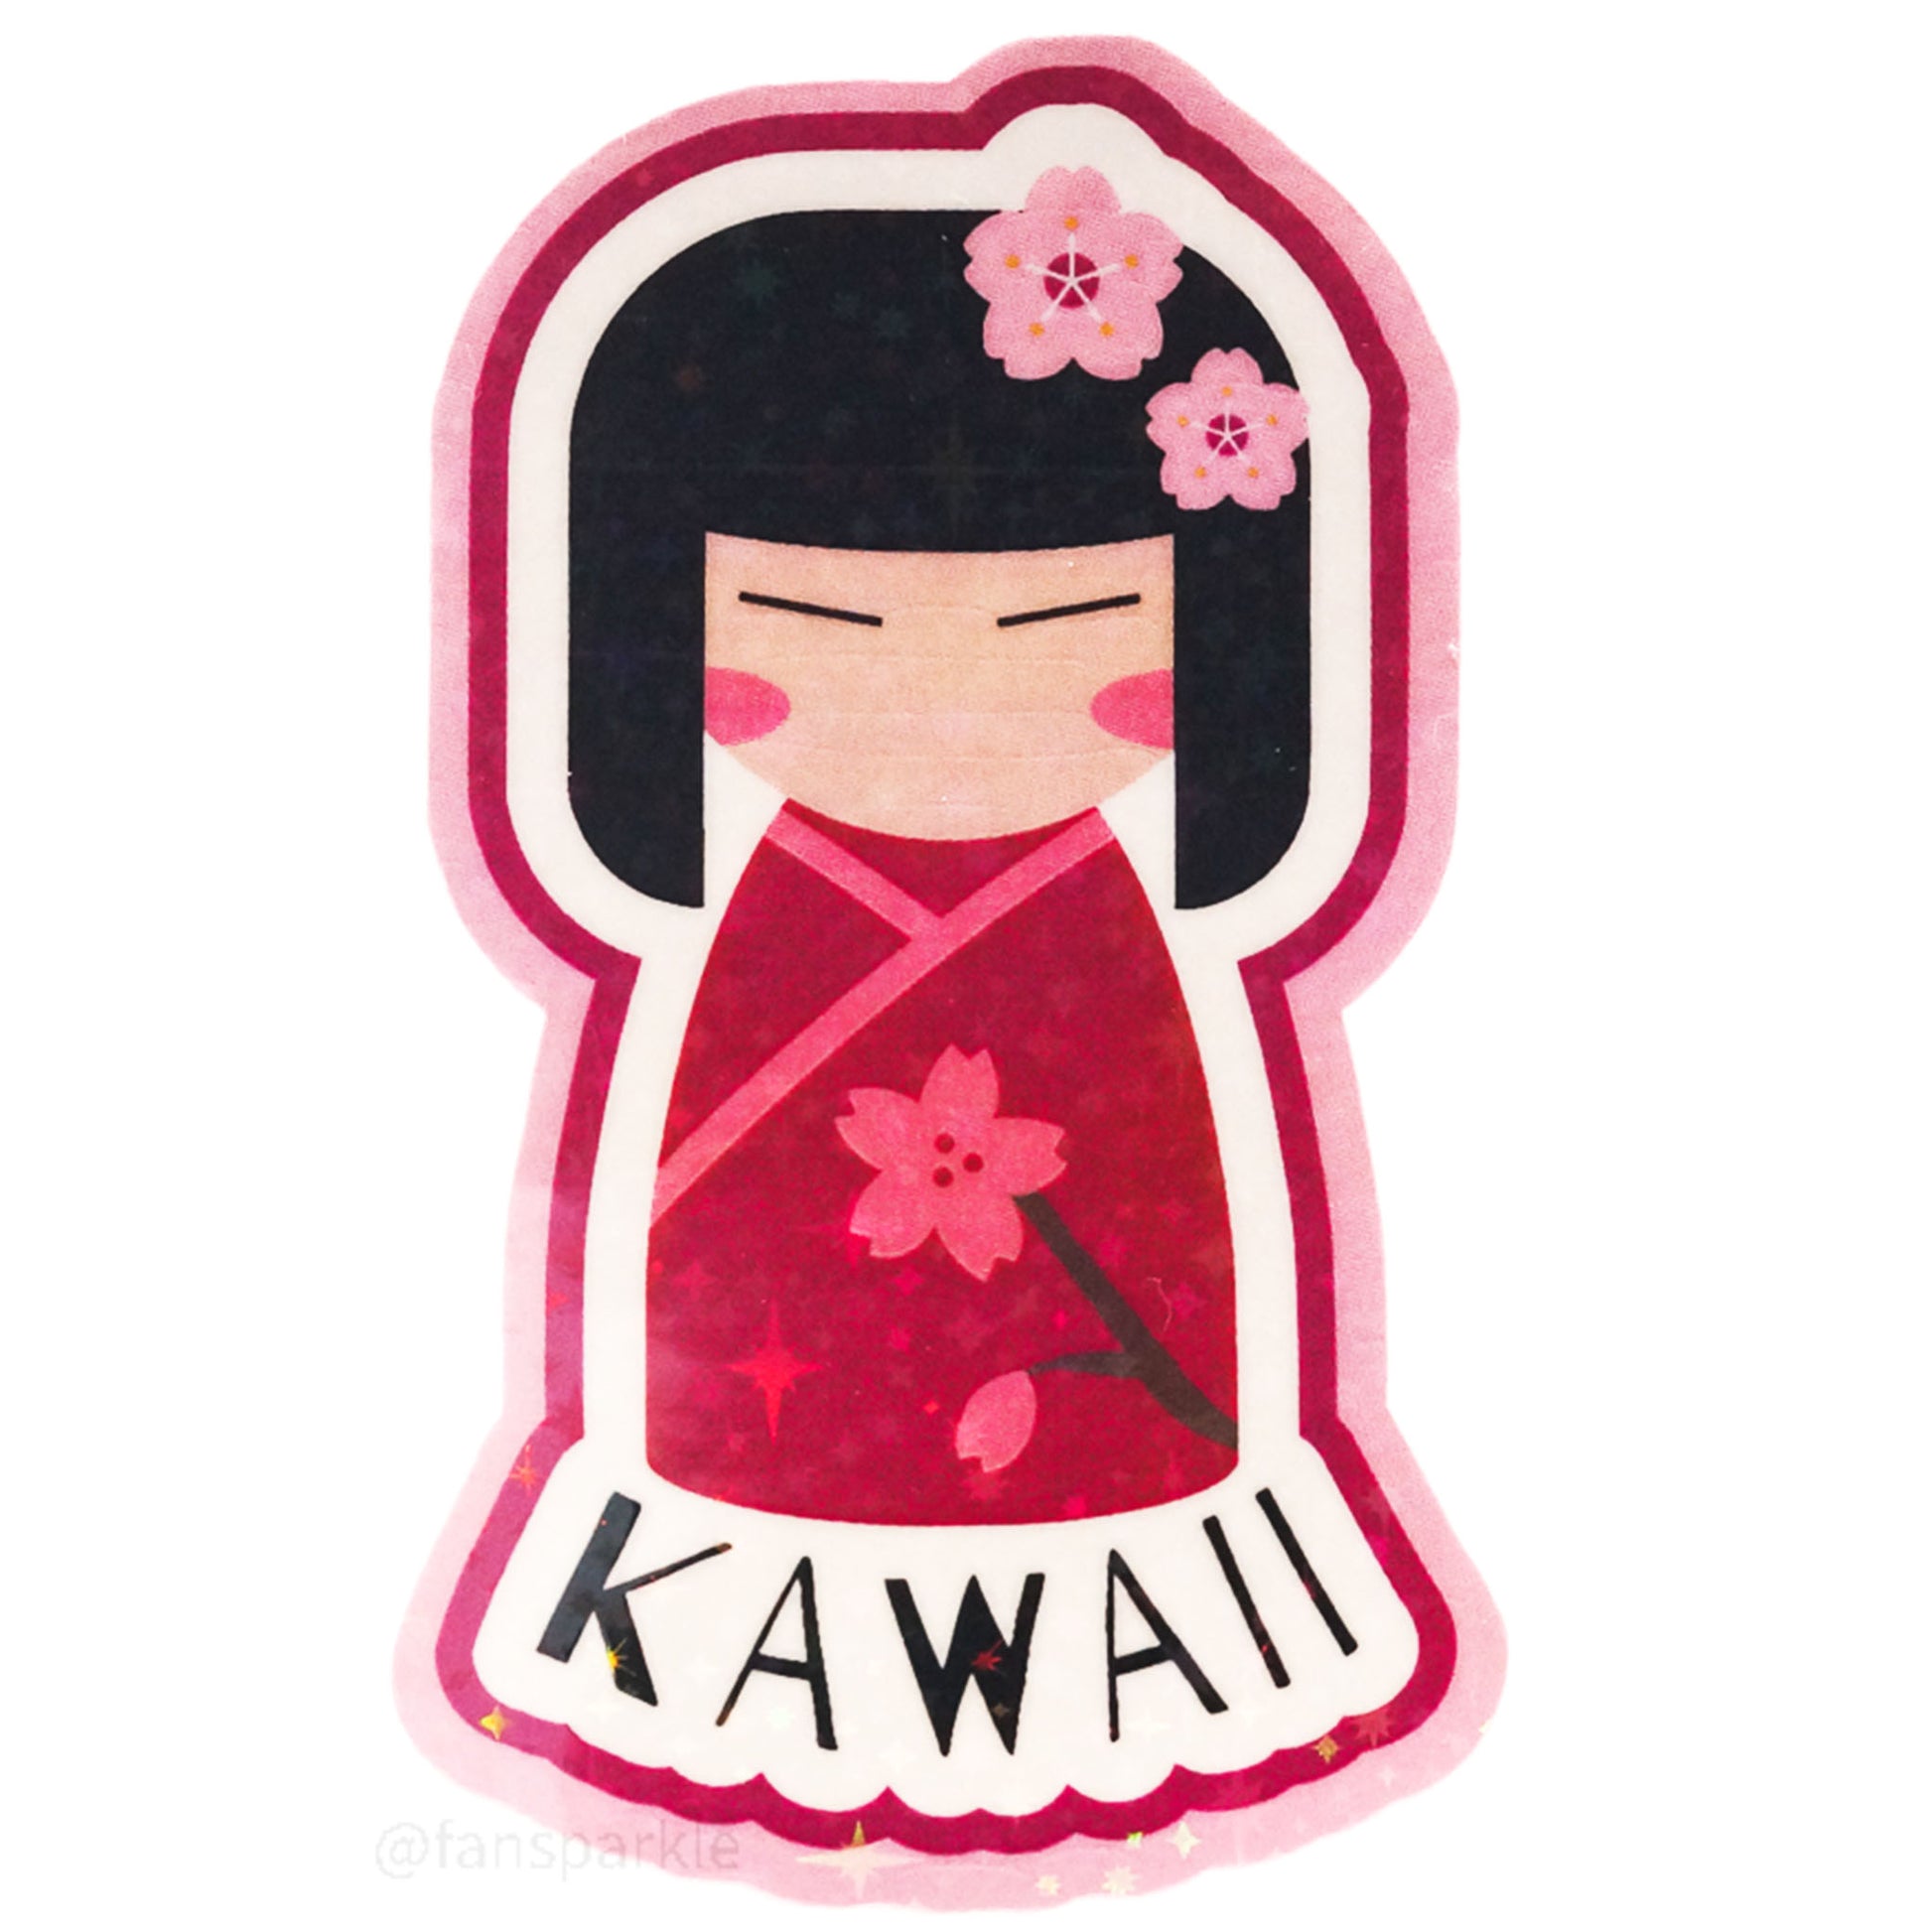 Kawaii Girl Sticker - Fan Sparkle